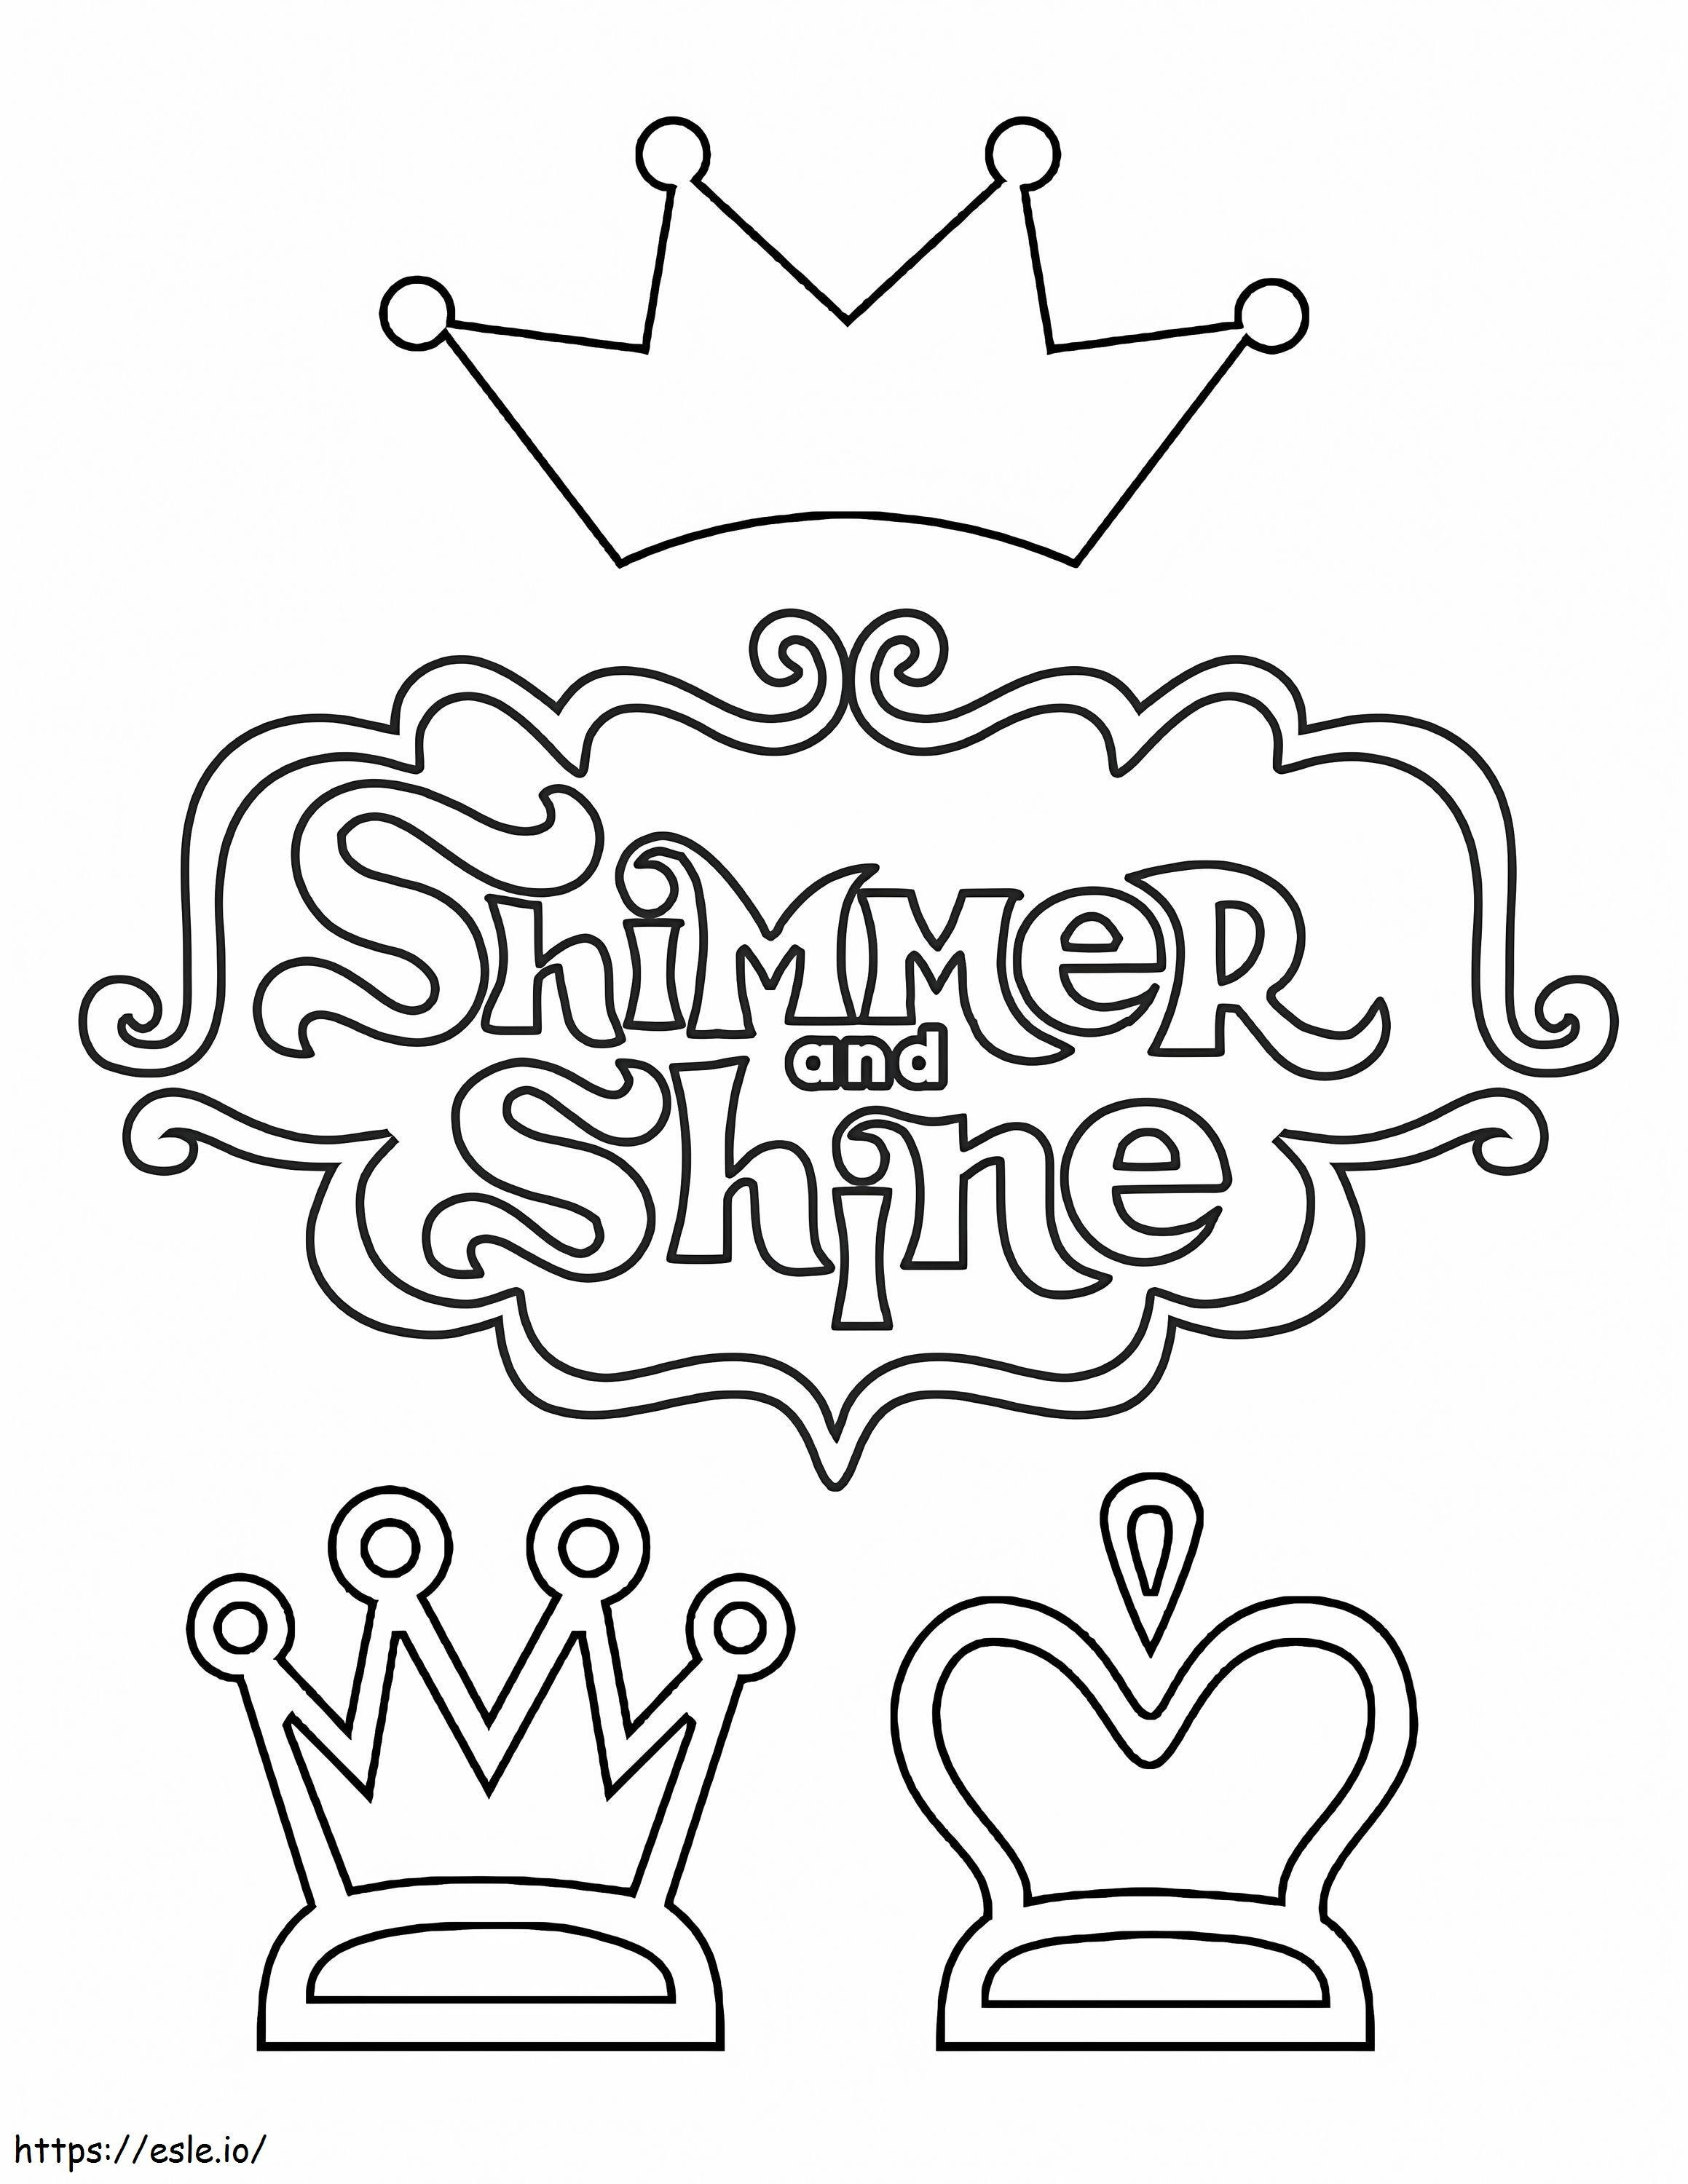 1571627308 Shimmer And Shine-Logo ausmalbilder